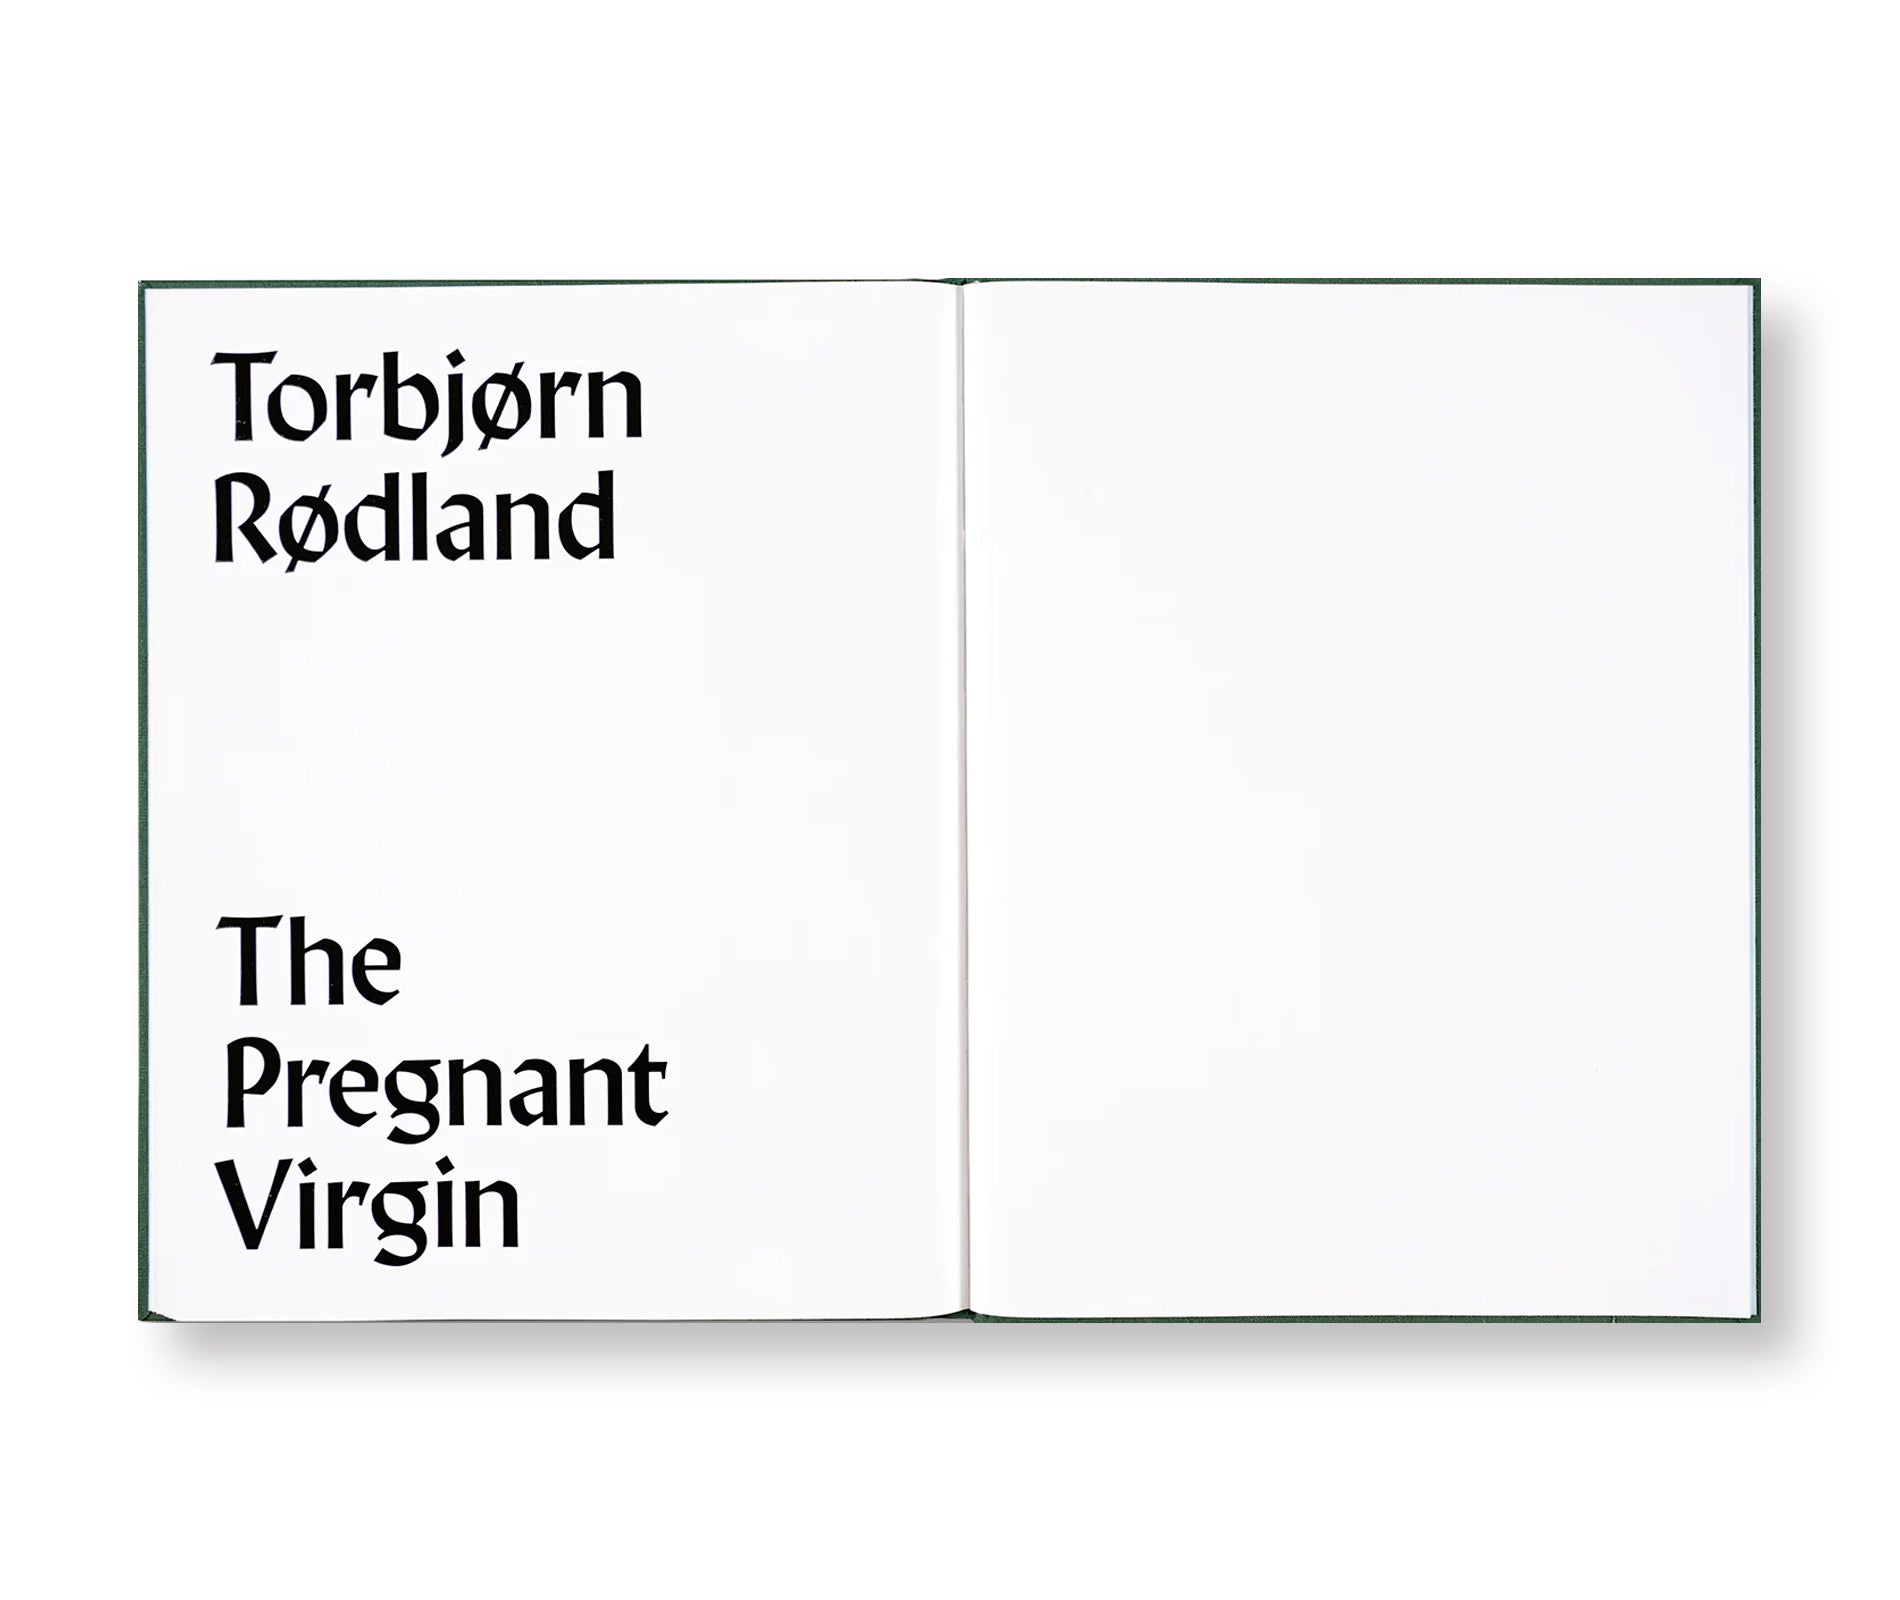 THE PREGNANT VIRGIN by Torbjørn Rødland